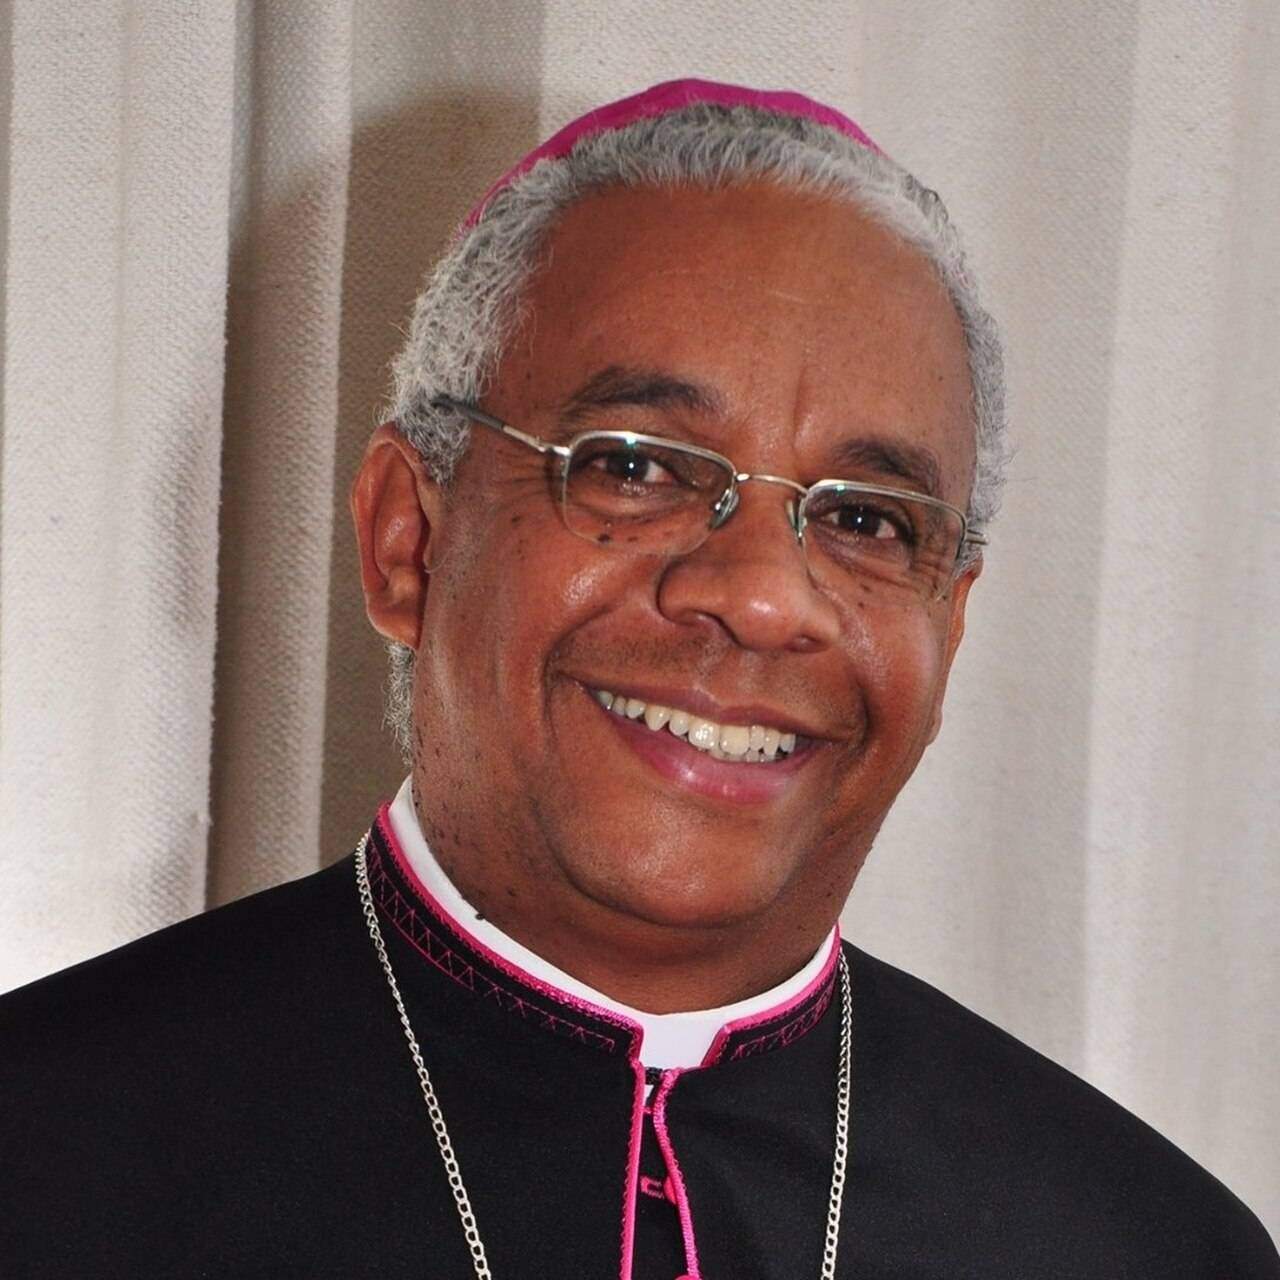 Papa Francisco nomeia novo bispo de Petrolina (PE)